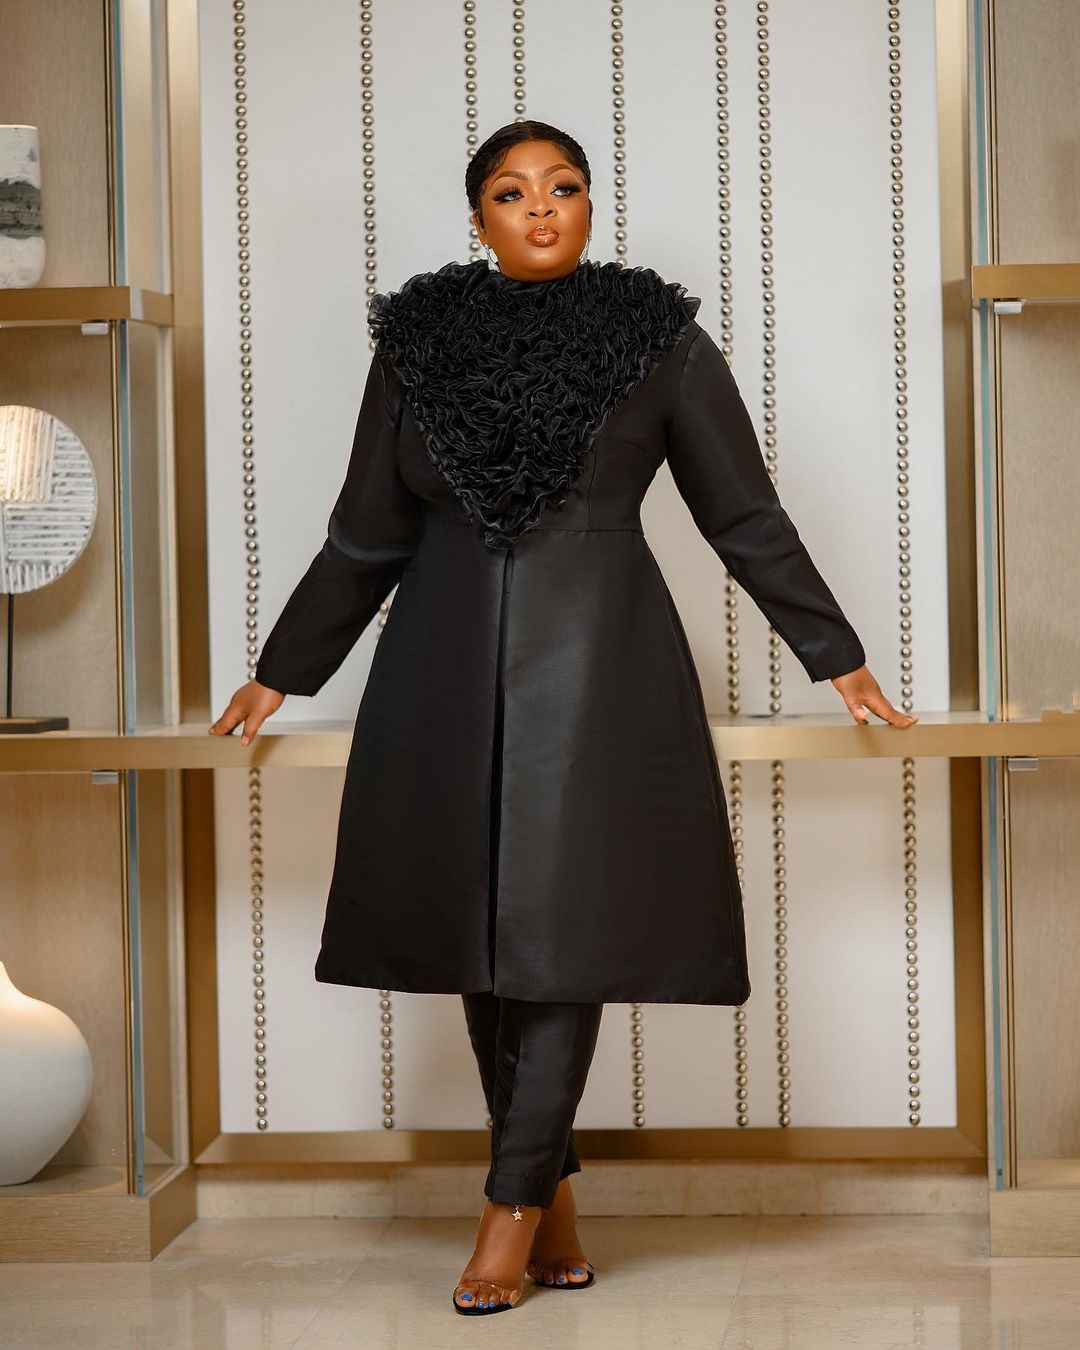 Eniola Badmus- Setting Black As The New Fashion Color